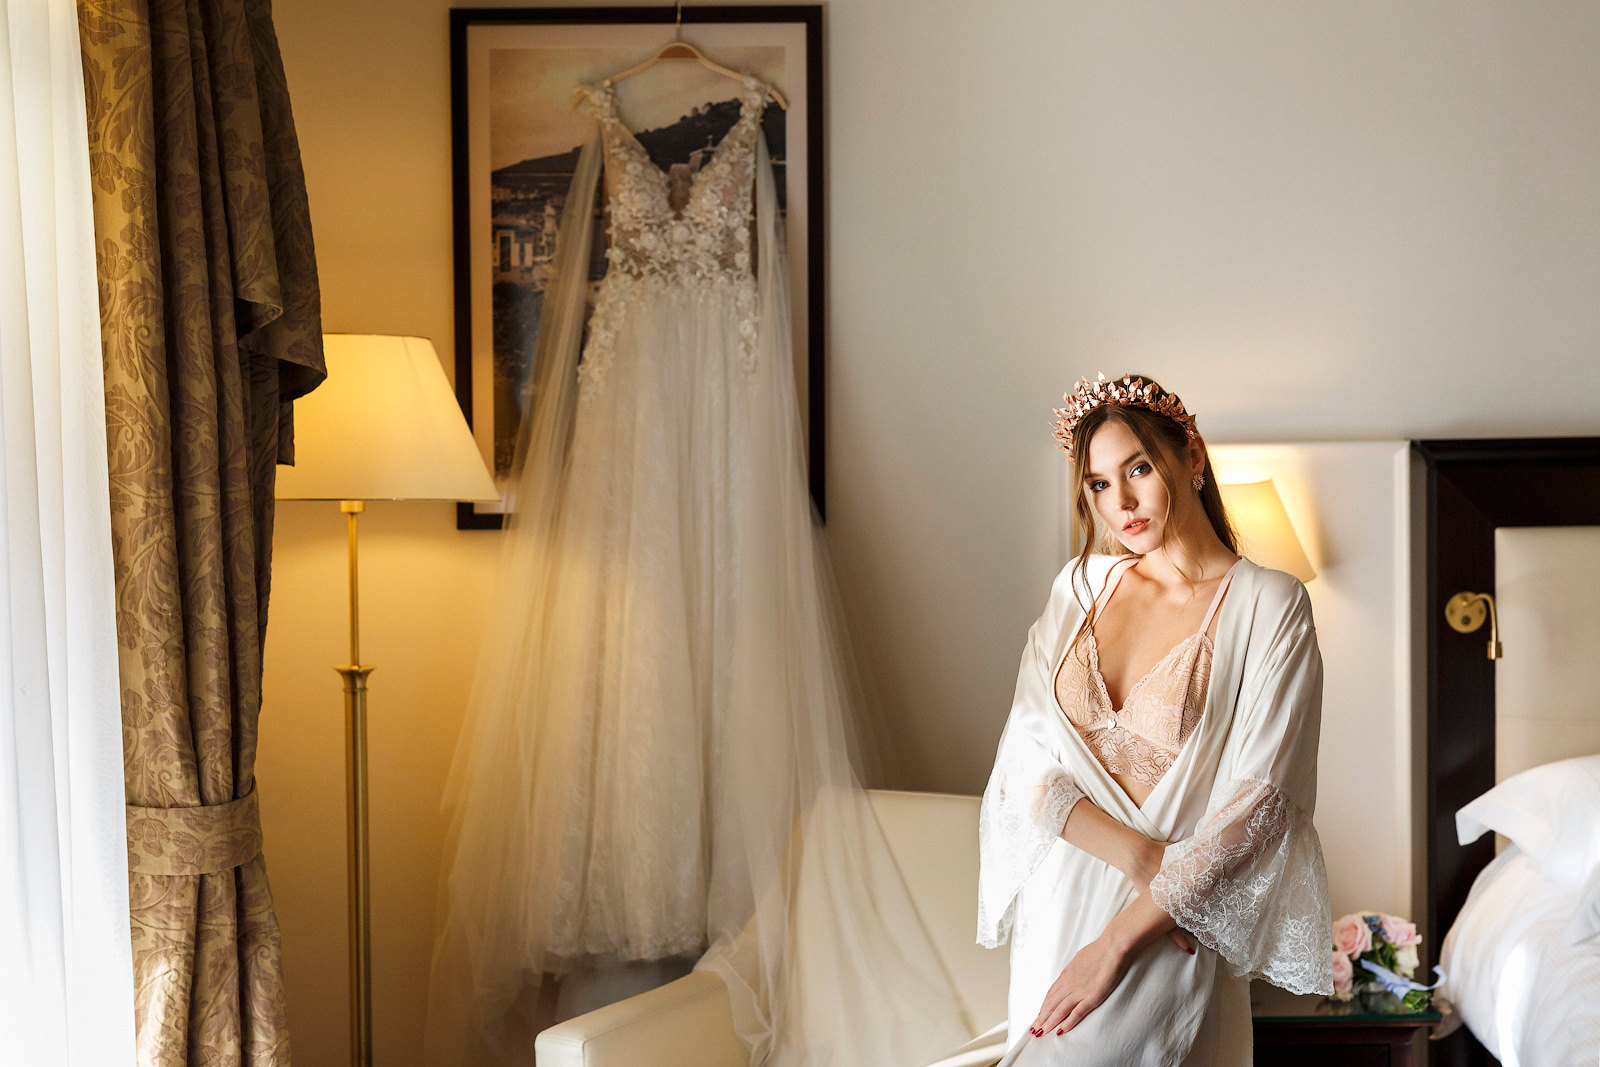 Brautfotos am Hochzeitsmorgen im luxuriösen Boudoir Stile einer Hotel Suite